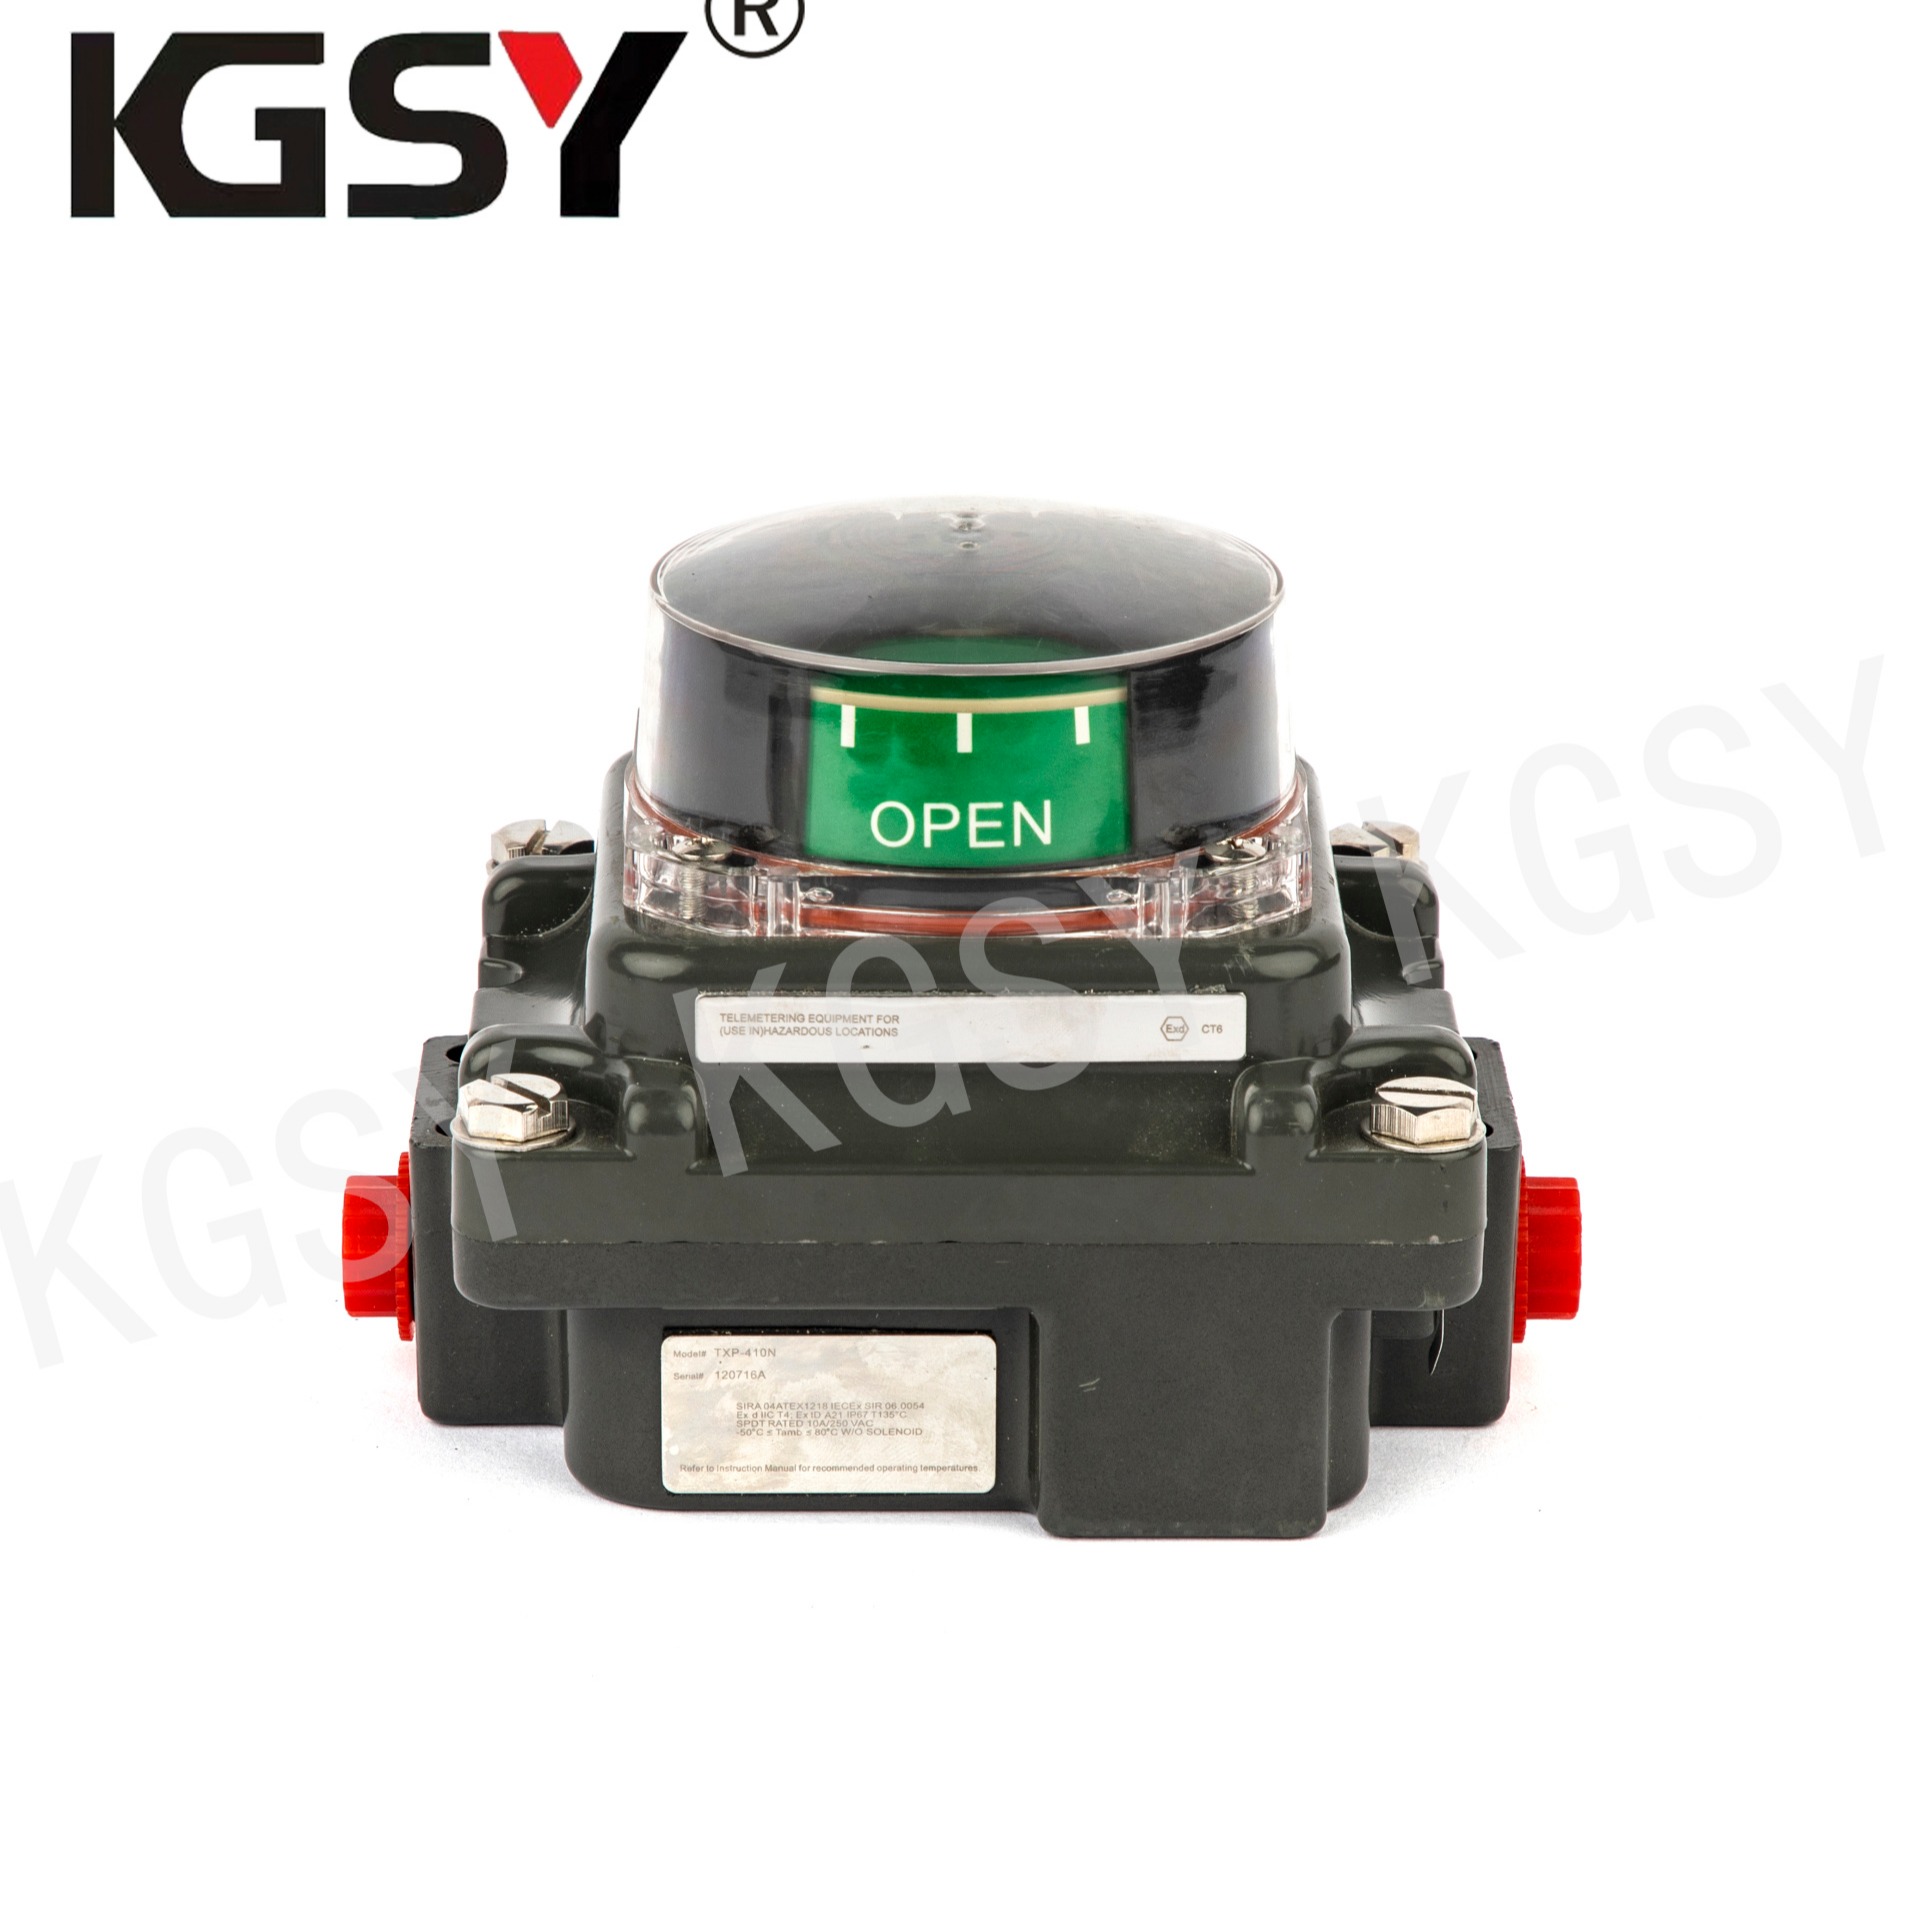 凯格赛扬限位开关信号反馈装置TPX410系列防爆型图片